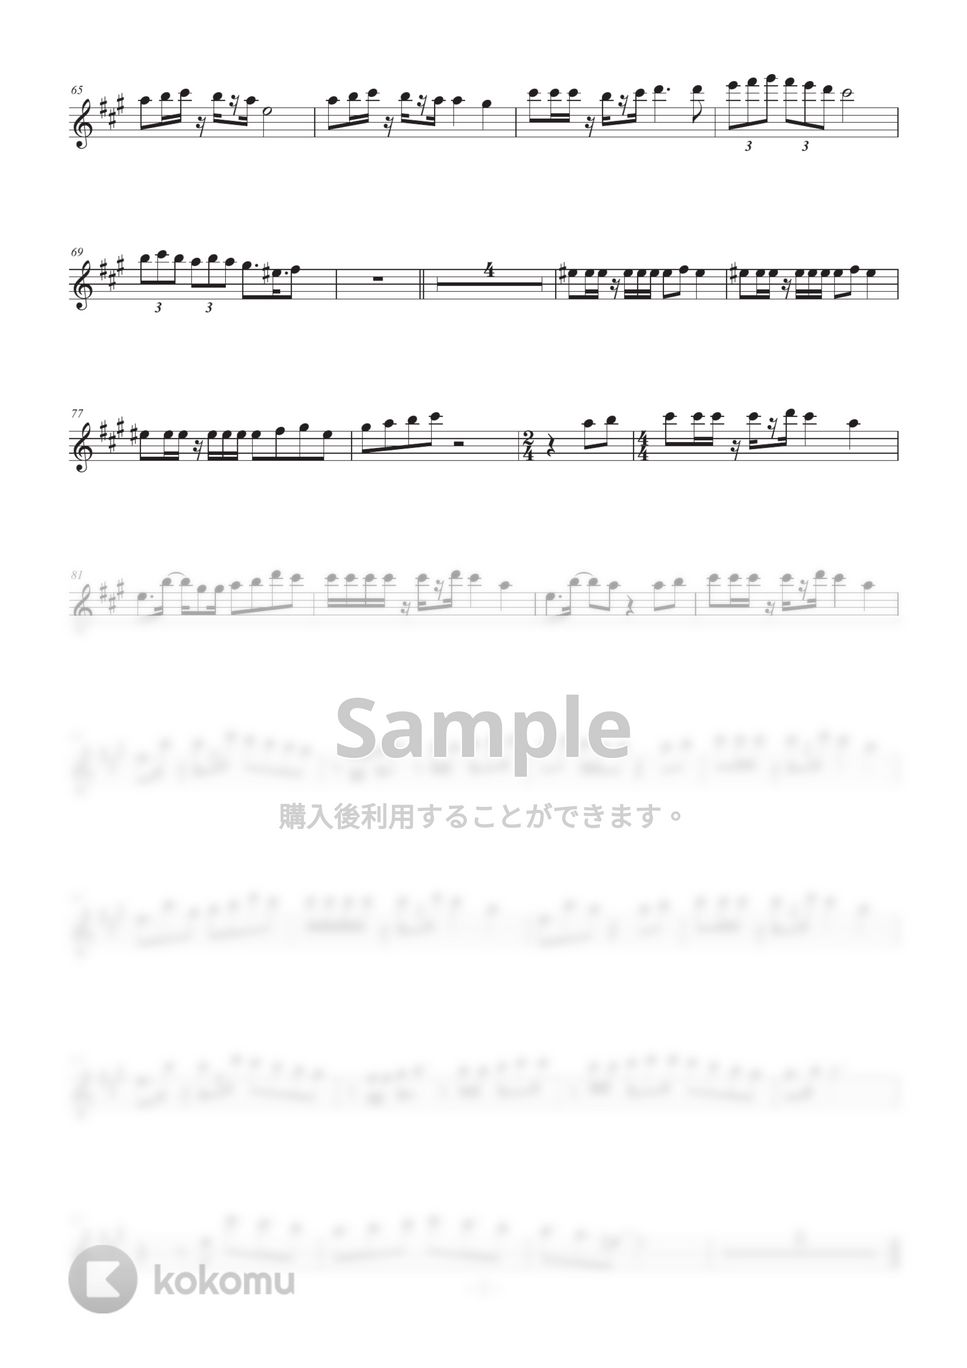 こじろー - 臨界ダイバー(inB♭) by HiRO Sax